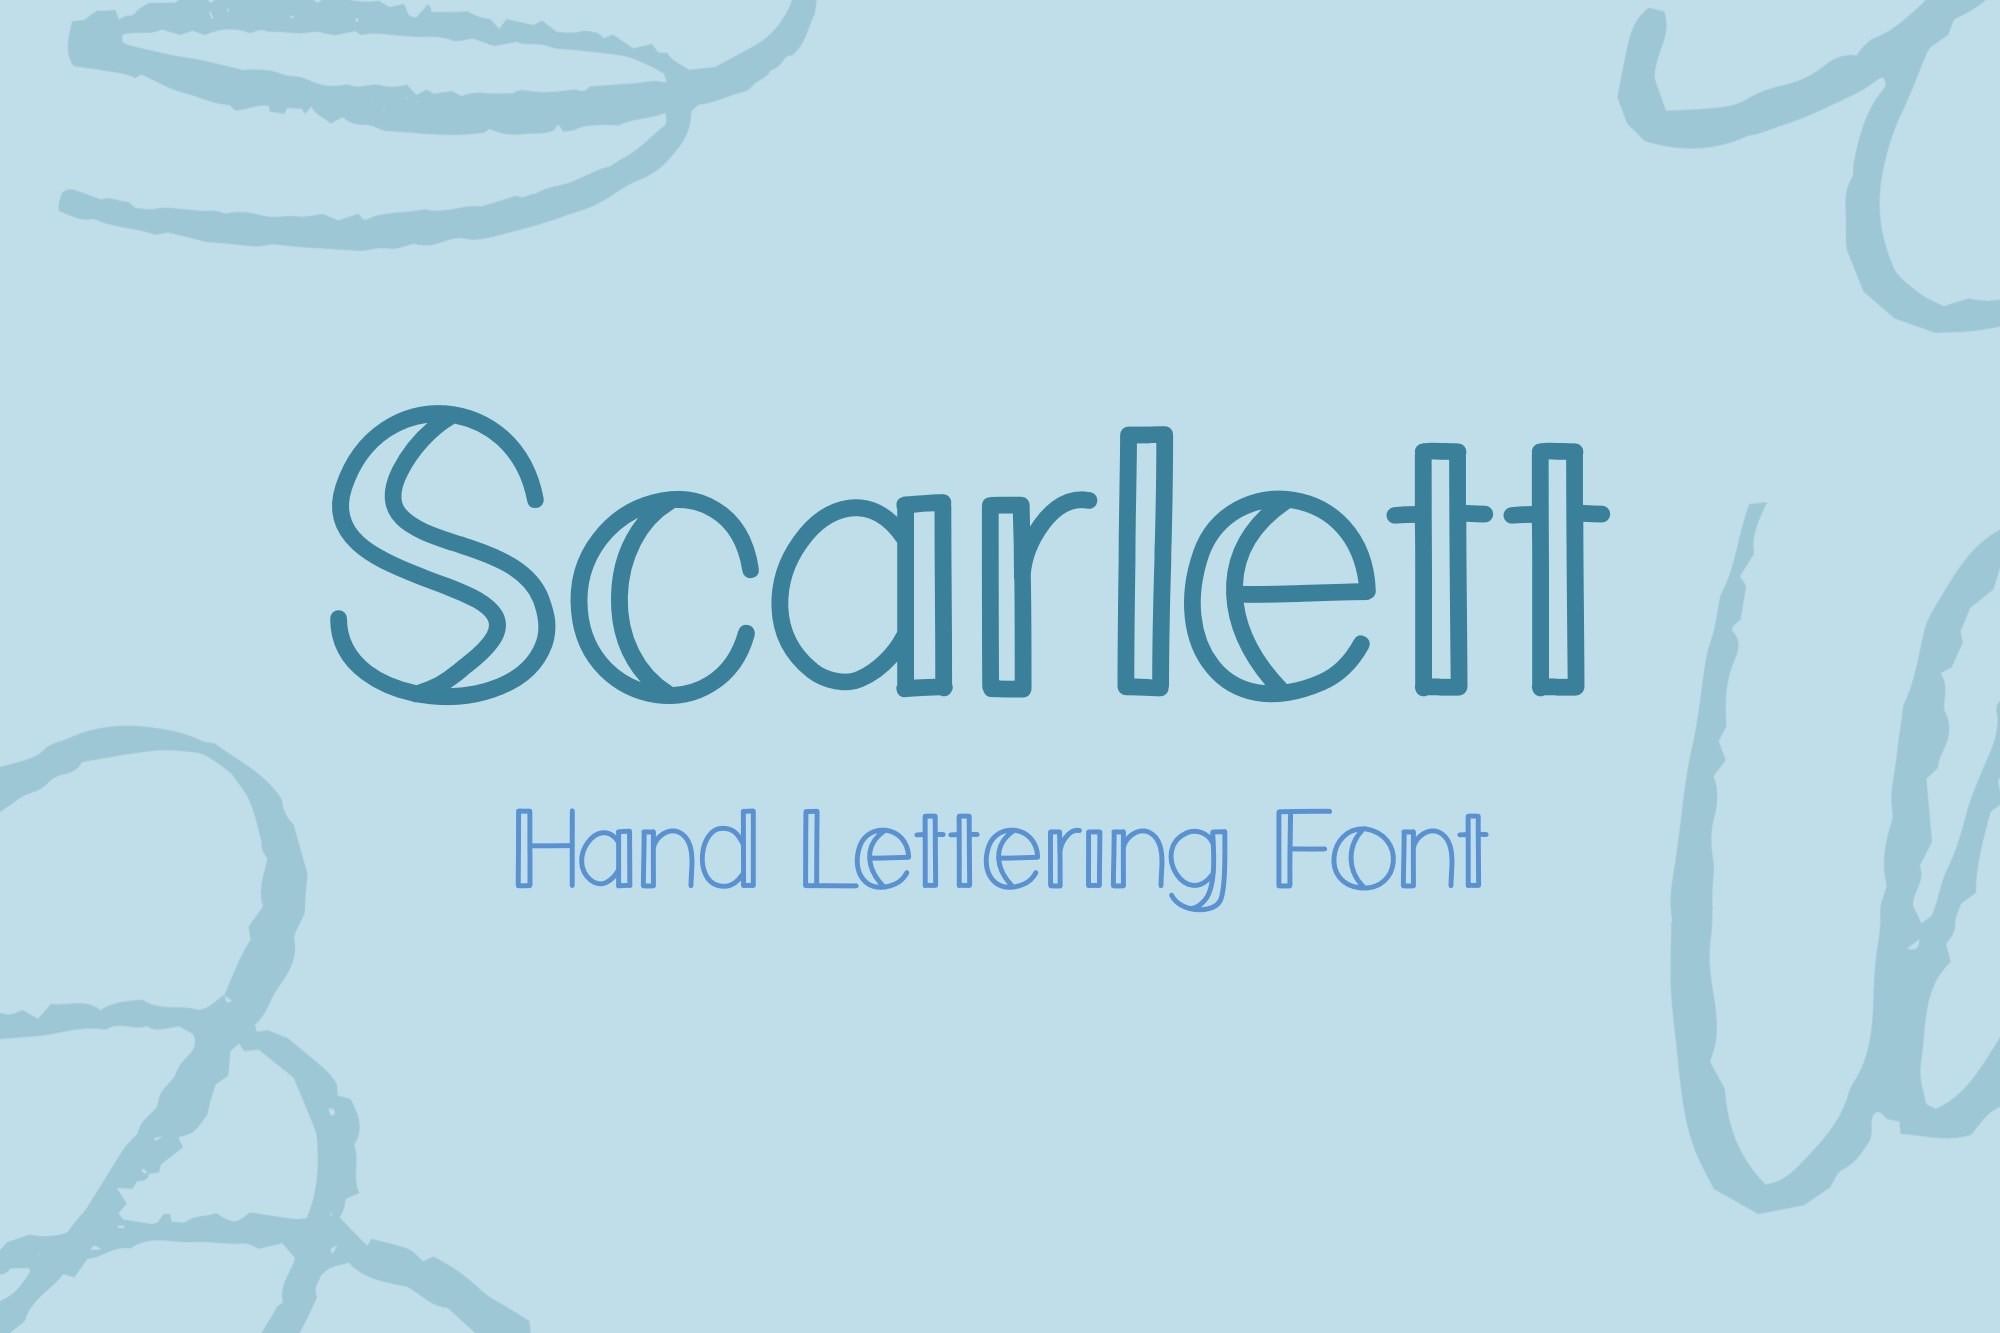 Scarlett Font